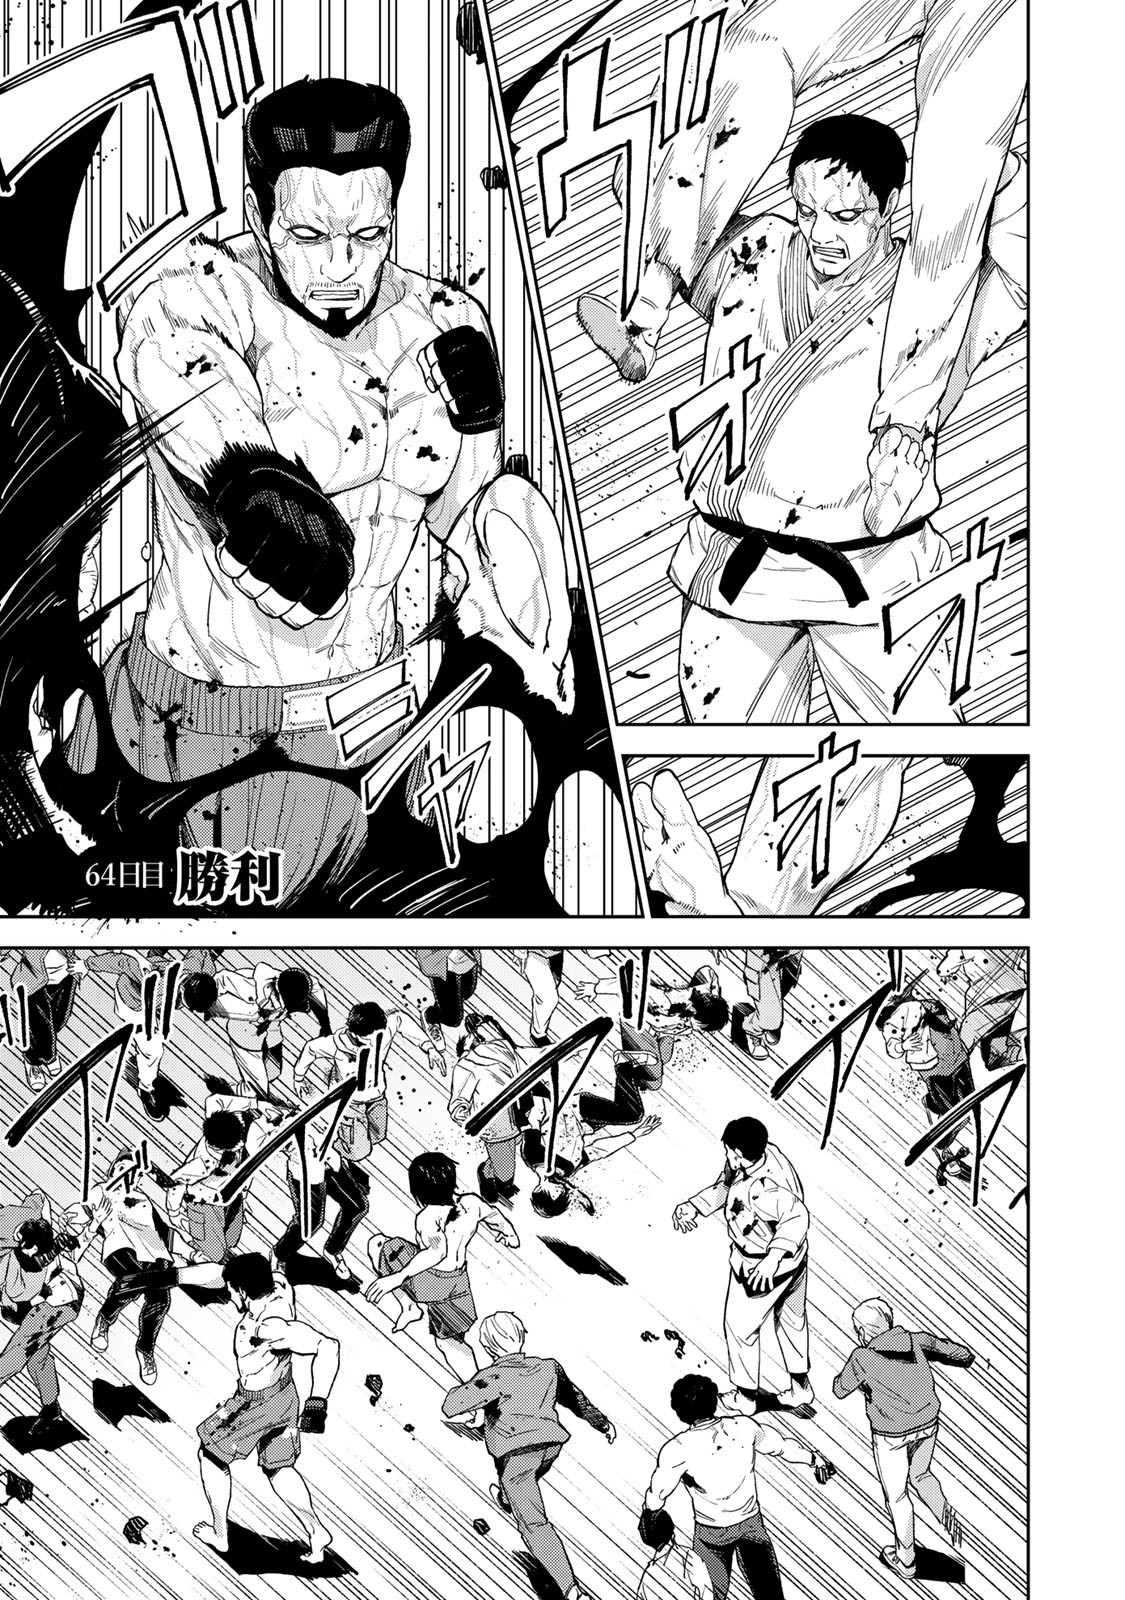 キングダム 第64話 を早く読む mangakoma - manga1001 - 漫画ロウ 